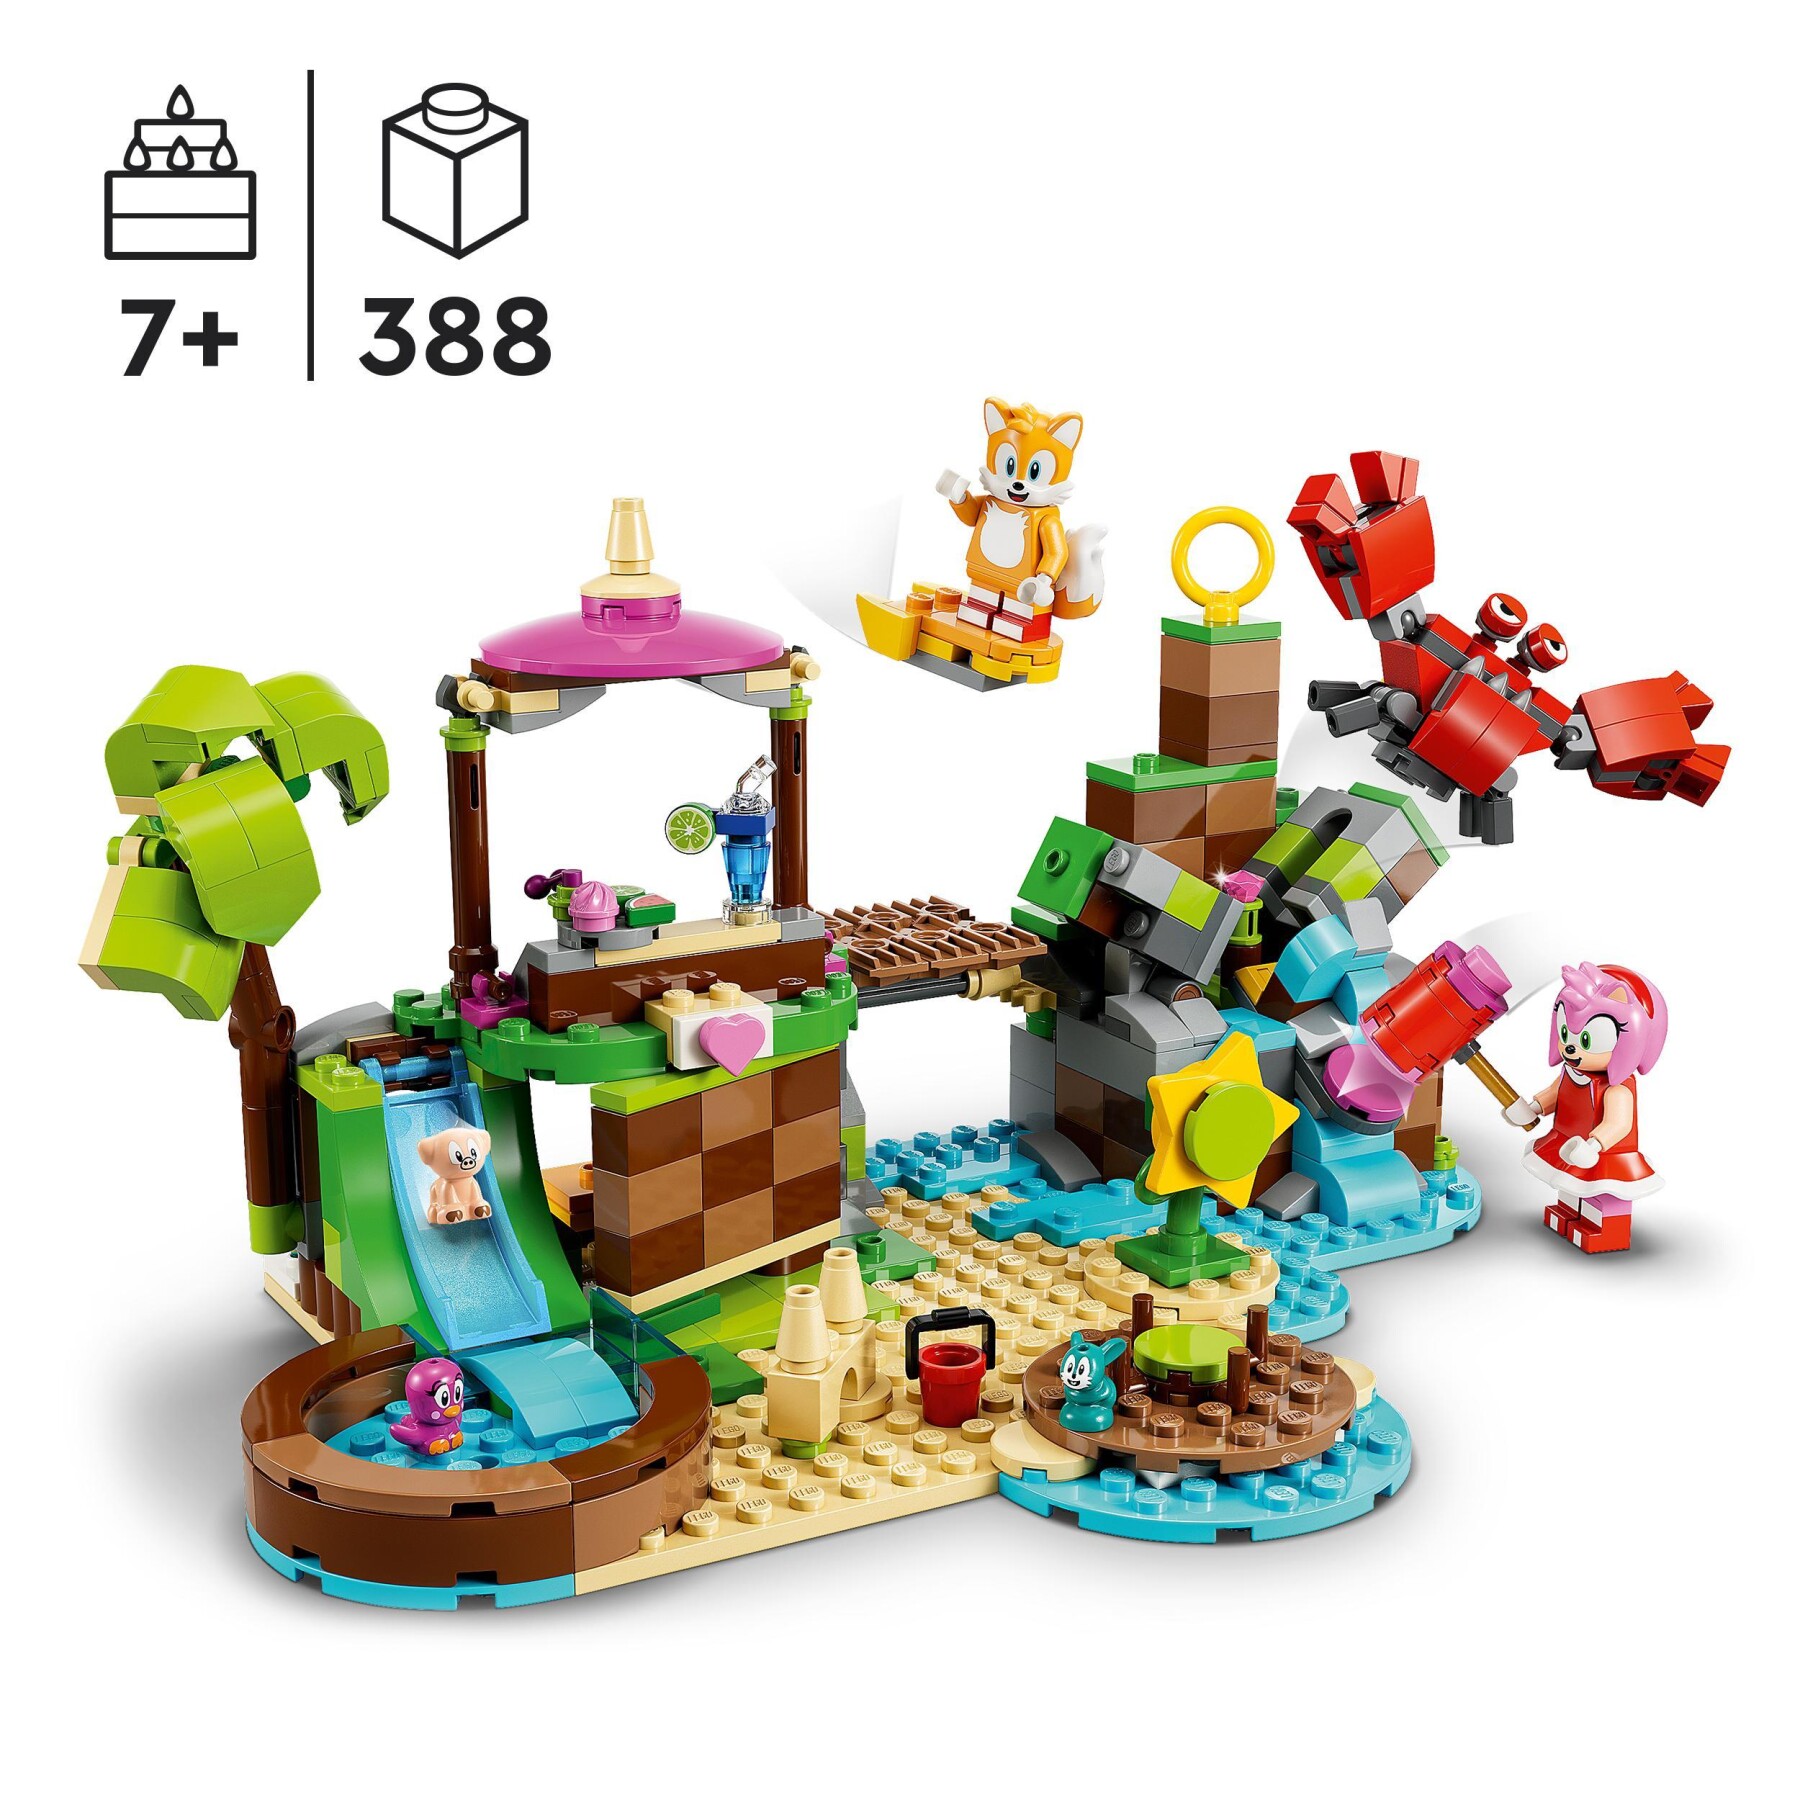 Lego sonic the hedgehog 76992 l’isola del soccorso animale di amy, giocattolo con 6 personaggi, regalo per bambini dai 7 anni - Sonic, Lego